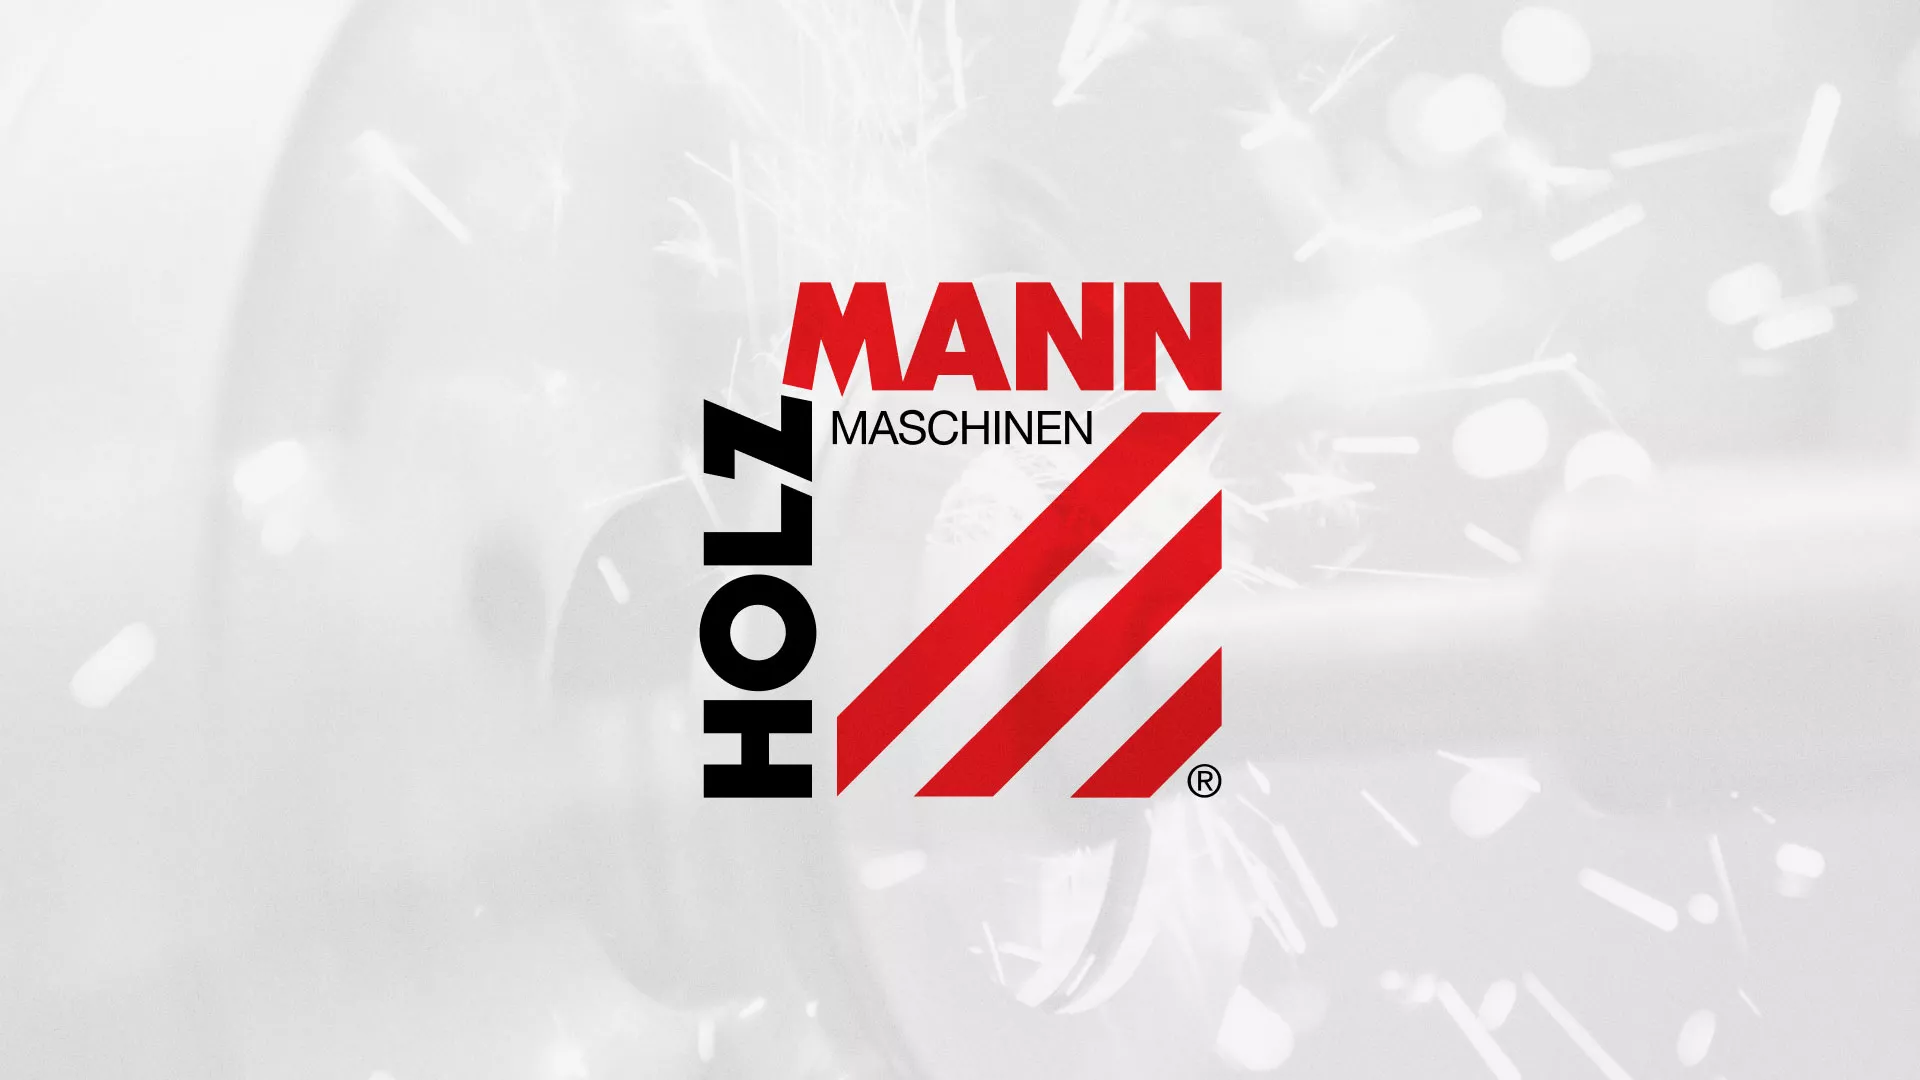 Создание сайта компании «HOLZMANN Maschinen GmbH» в Шебекино